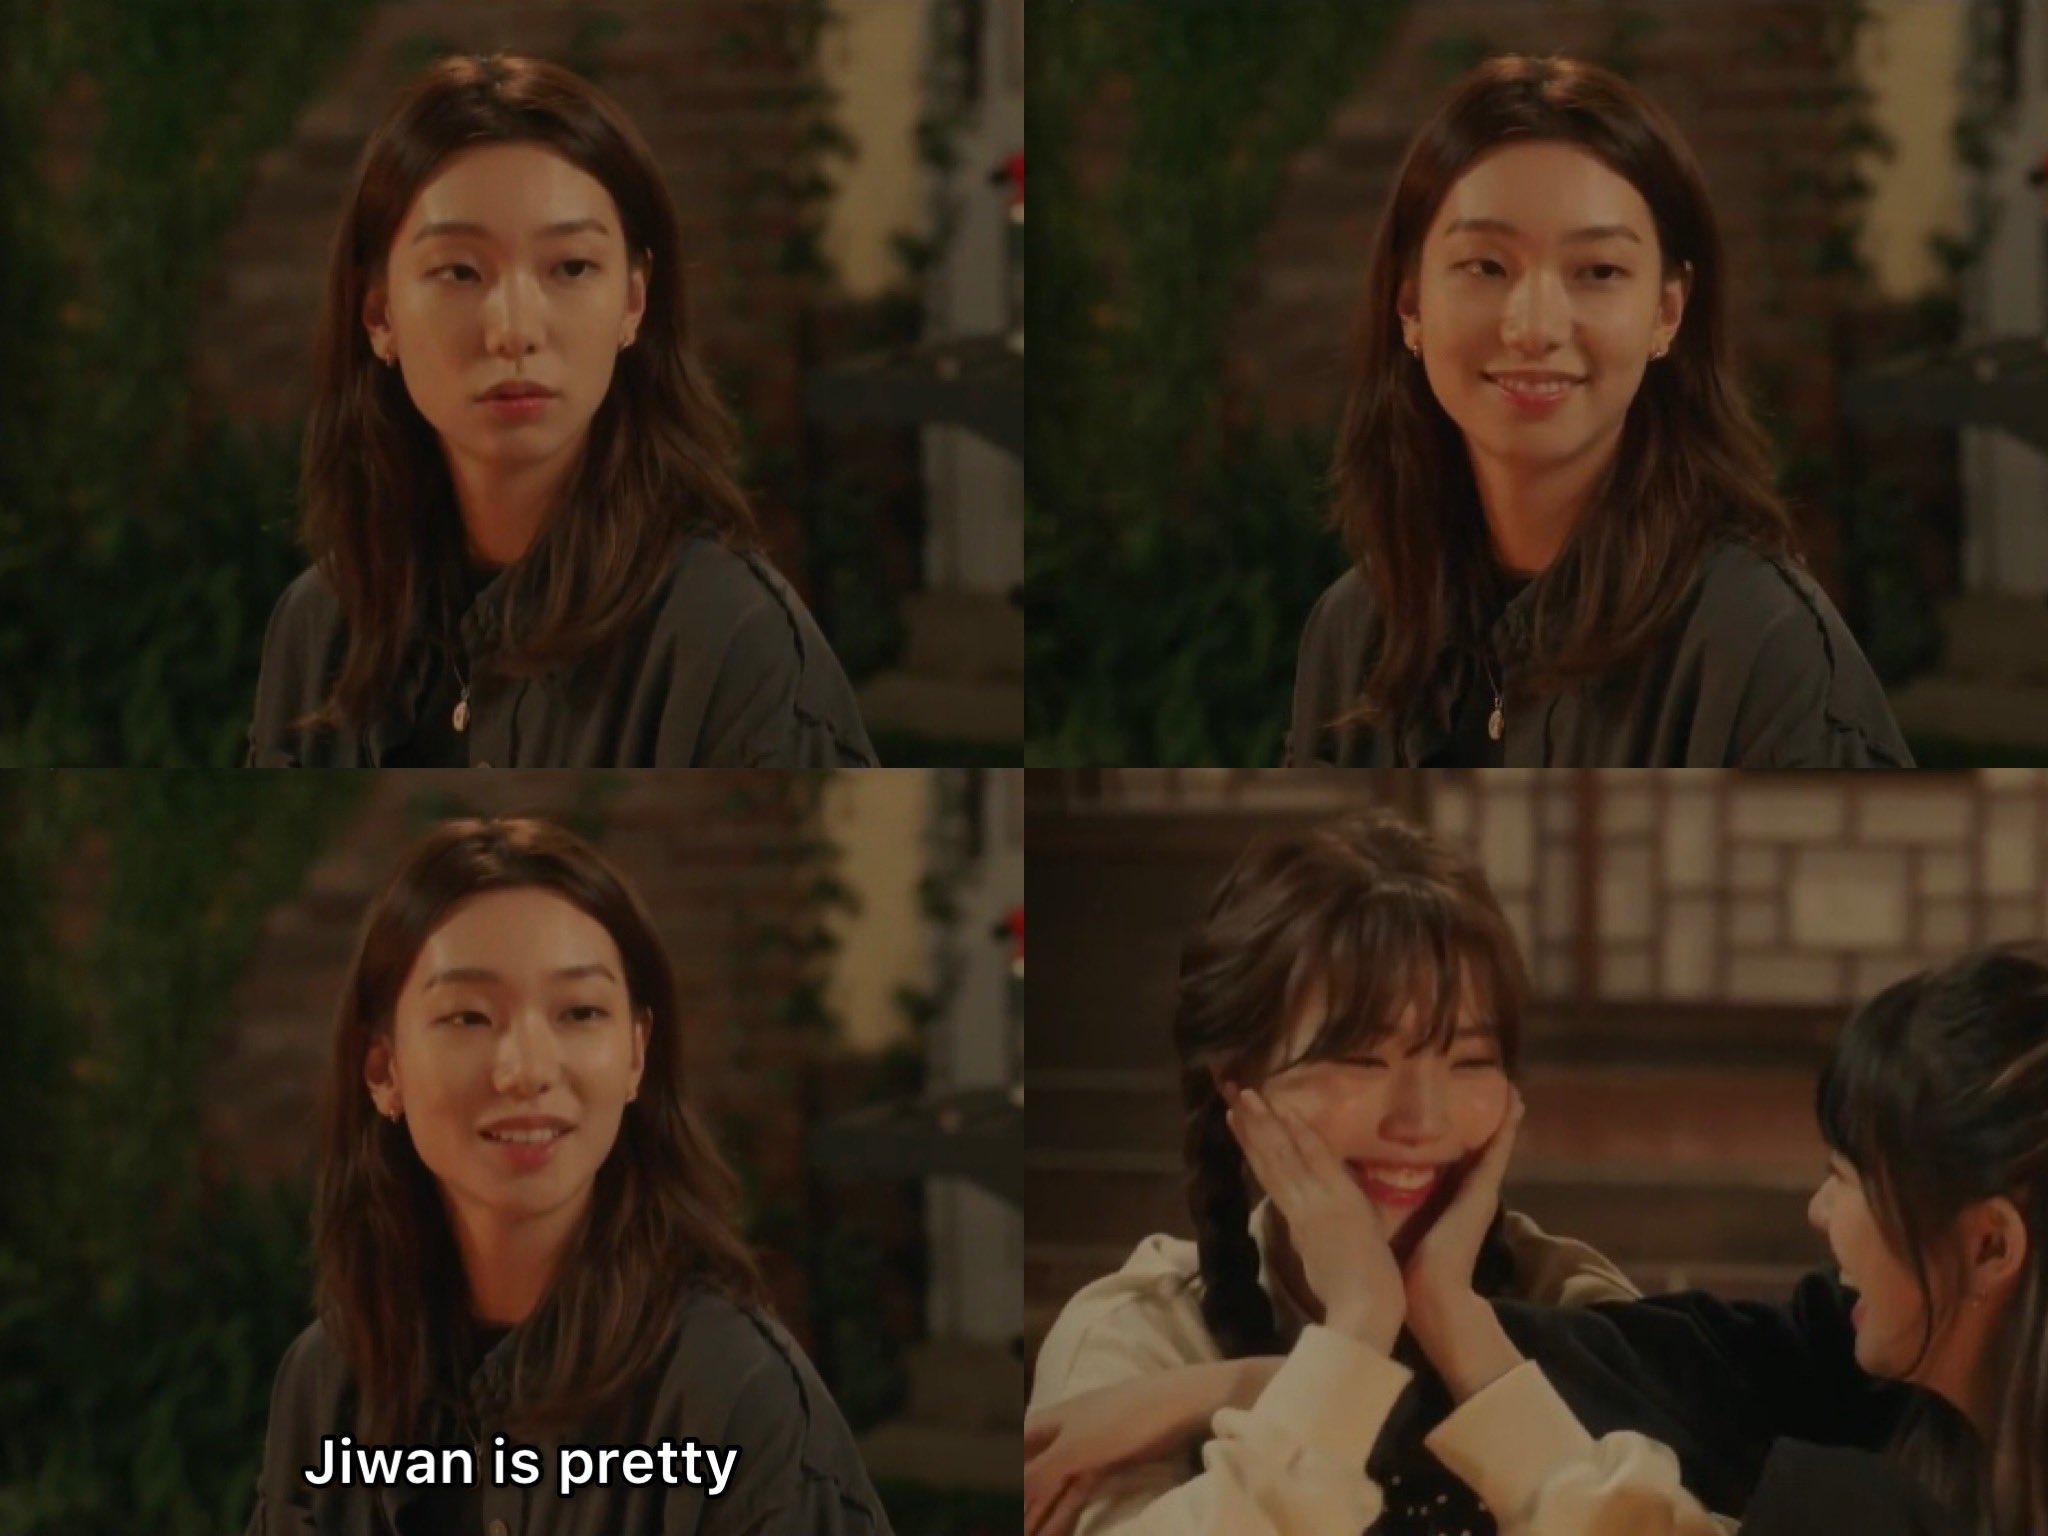 Sol luôn nhìn Jiwan với ánh mắt ngập tràn yêu thương. (Ảnh: Internet)